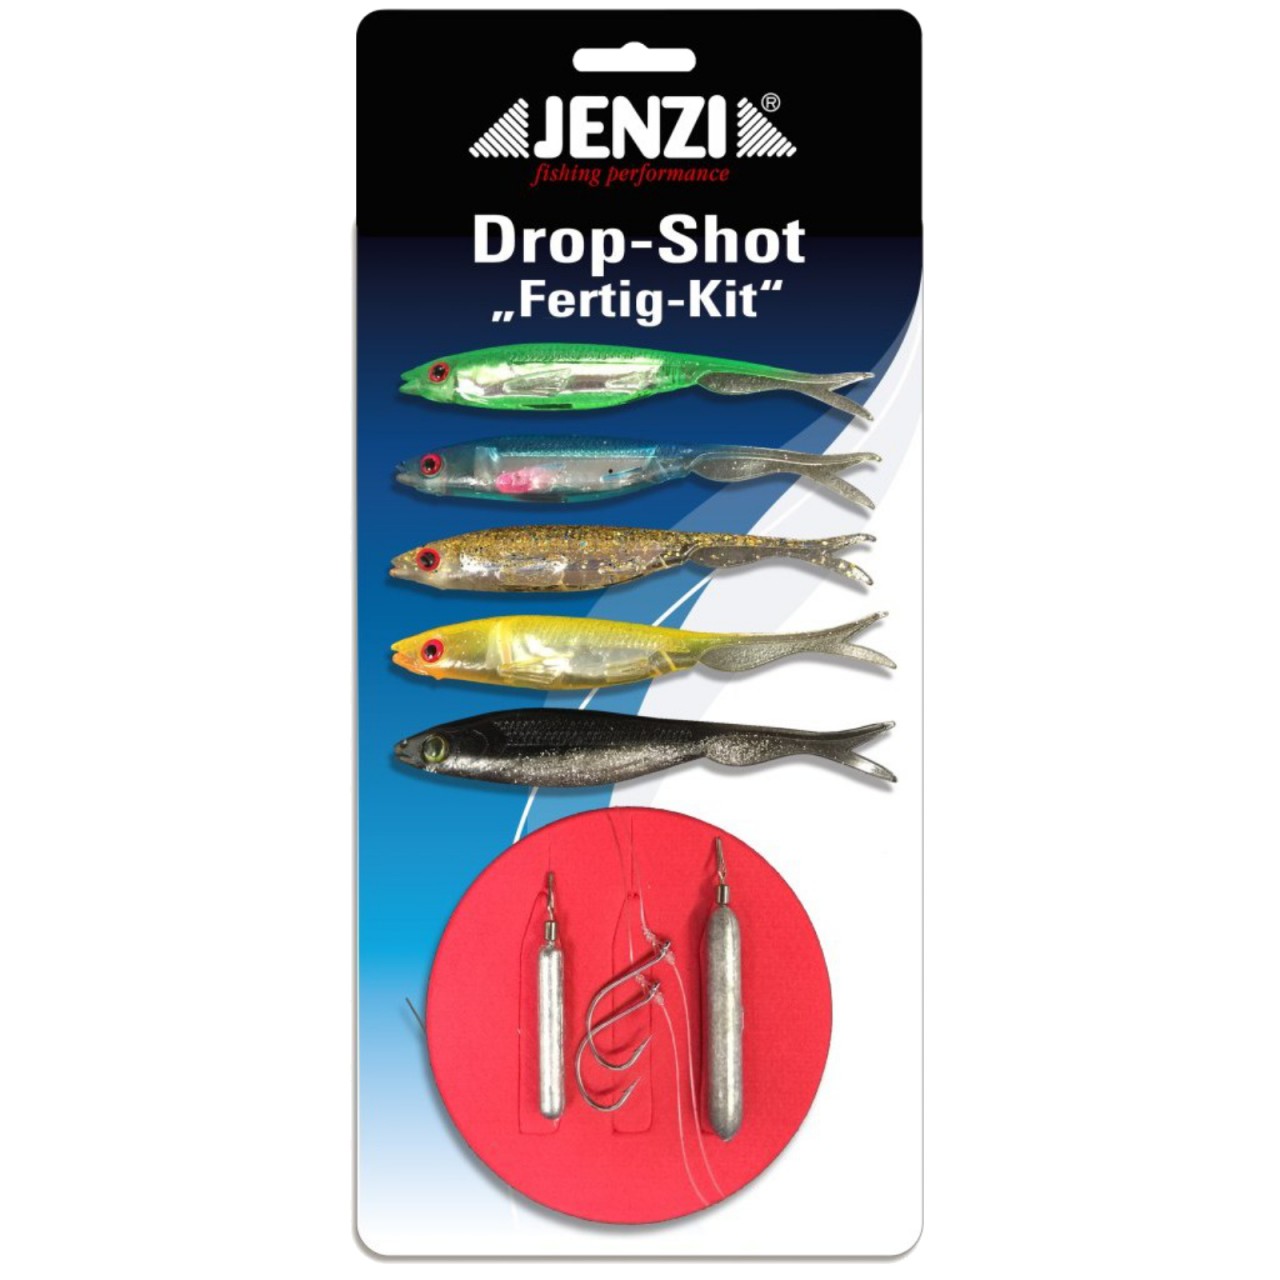 Jenzi Drop Shot Fertig-Kit